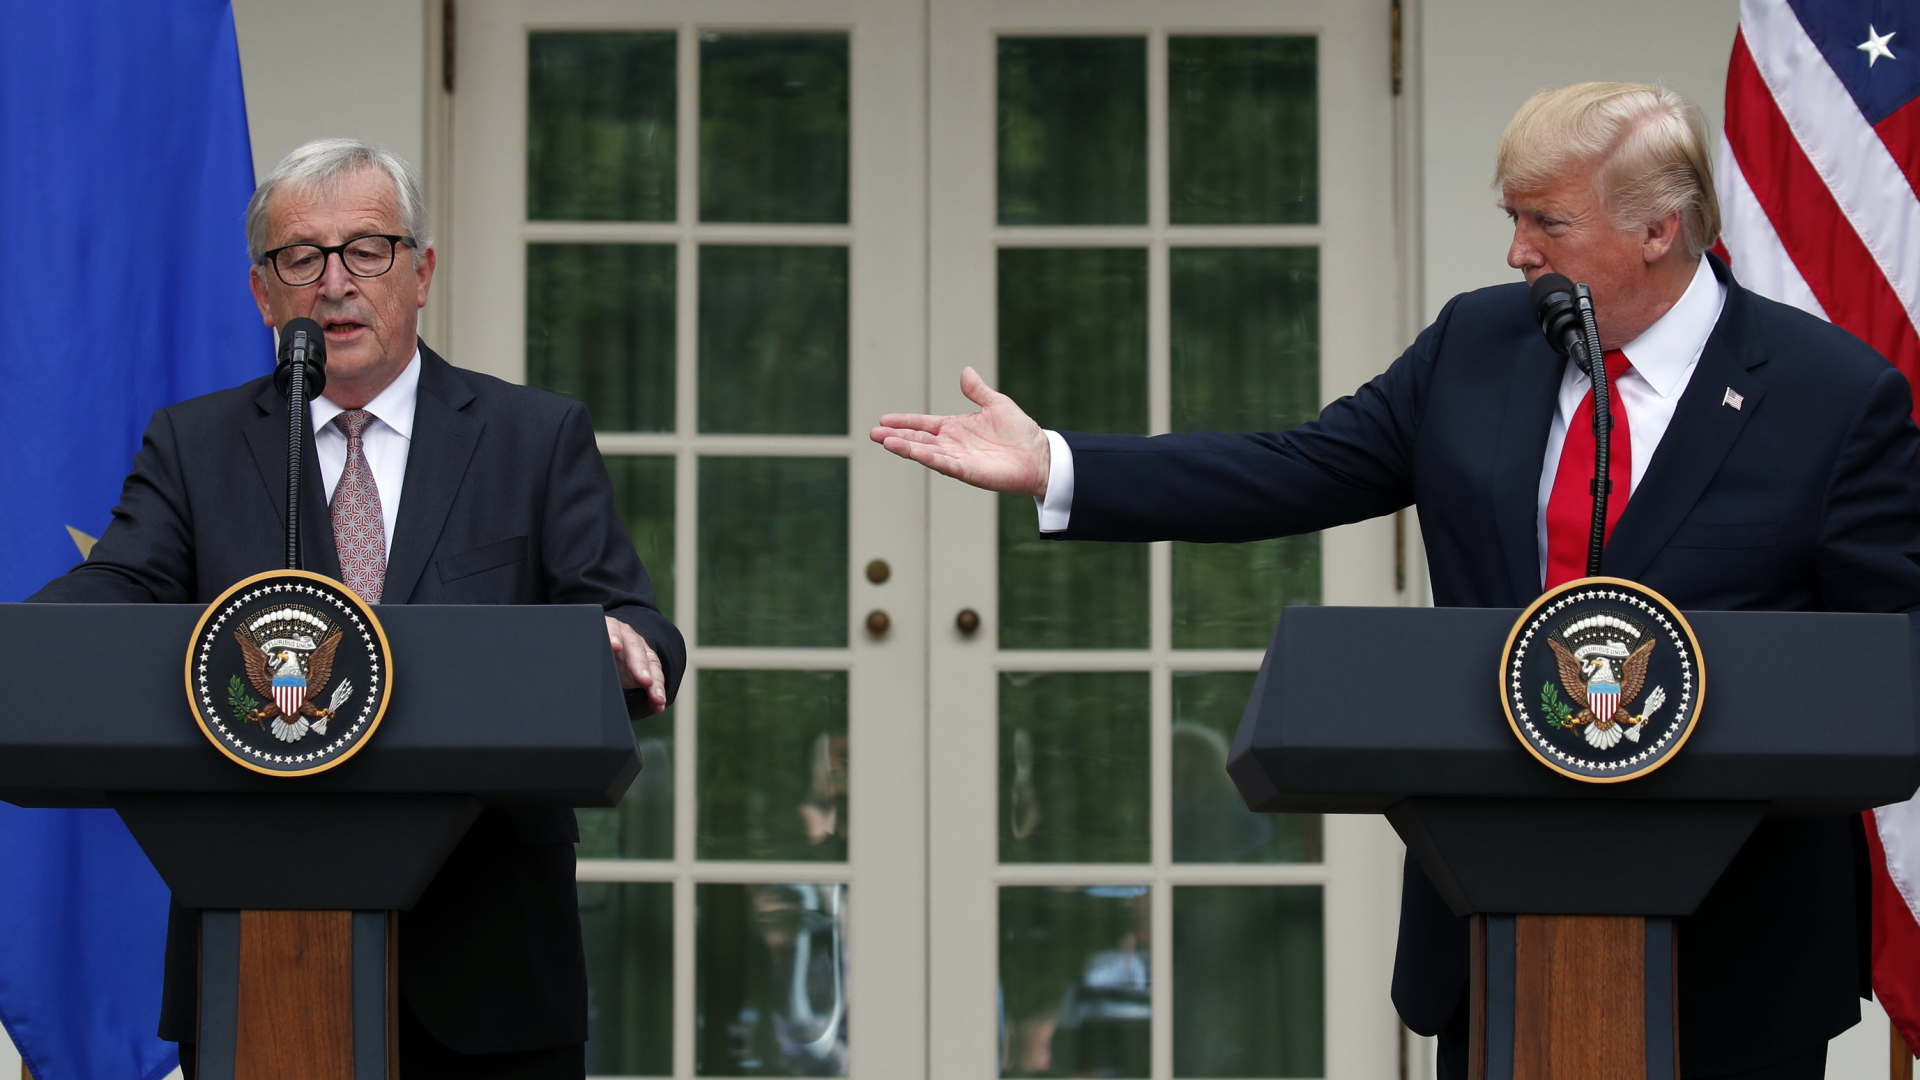 Jean-Claude Juncker und Donald Trump im Rosengarten des Weißen Hauses in Washington